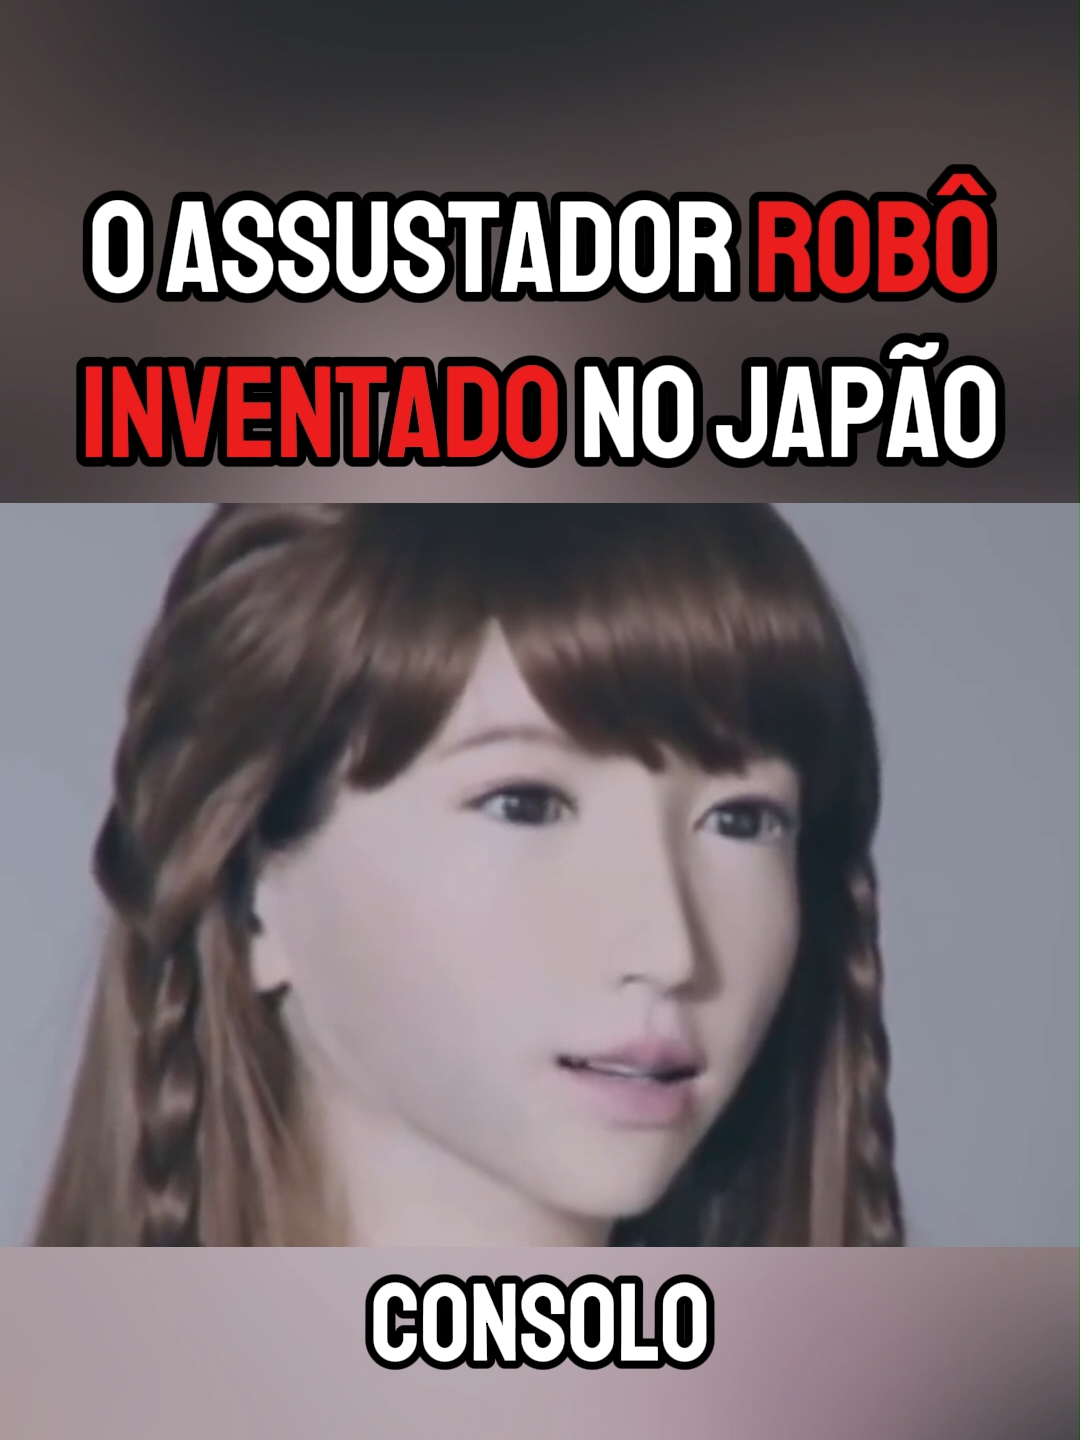 Bizarro robô realista inventado no Japão!